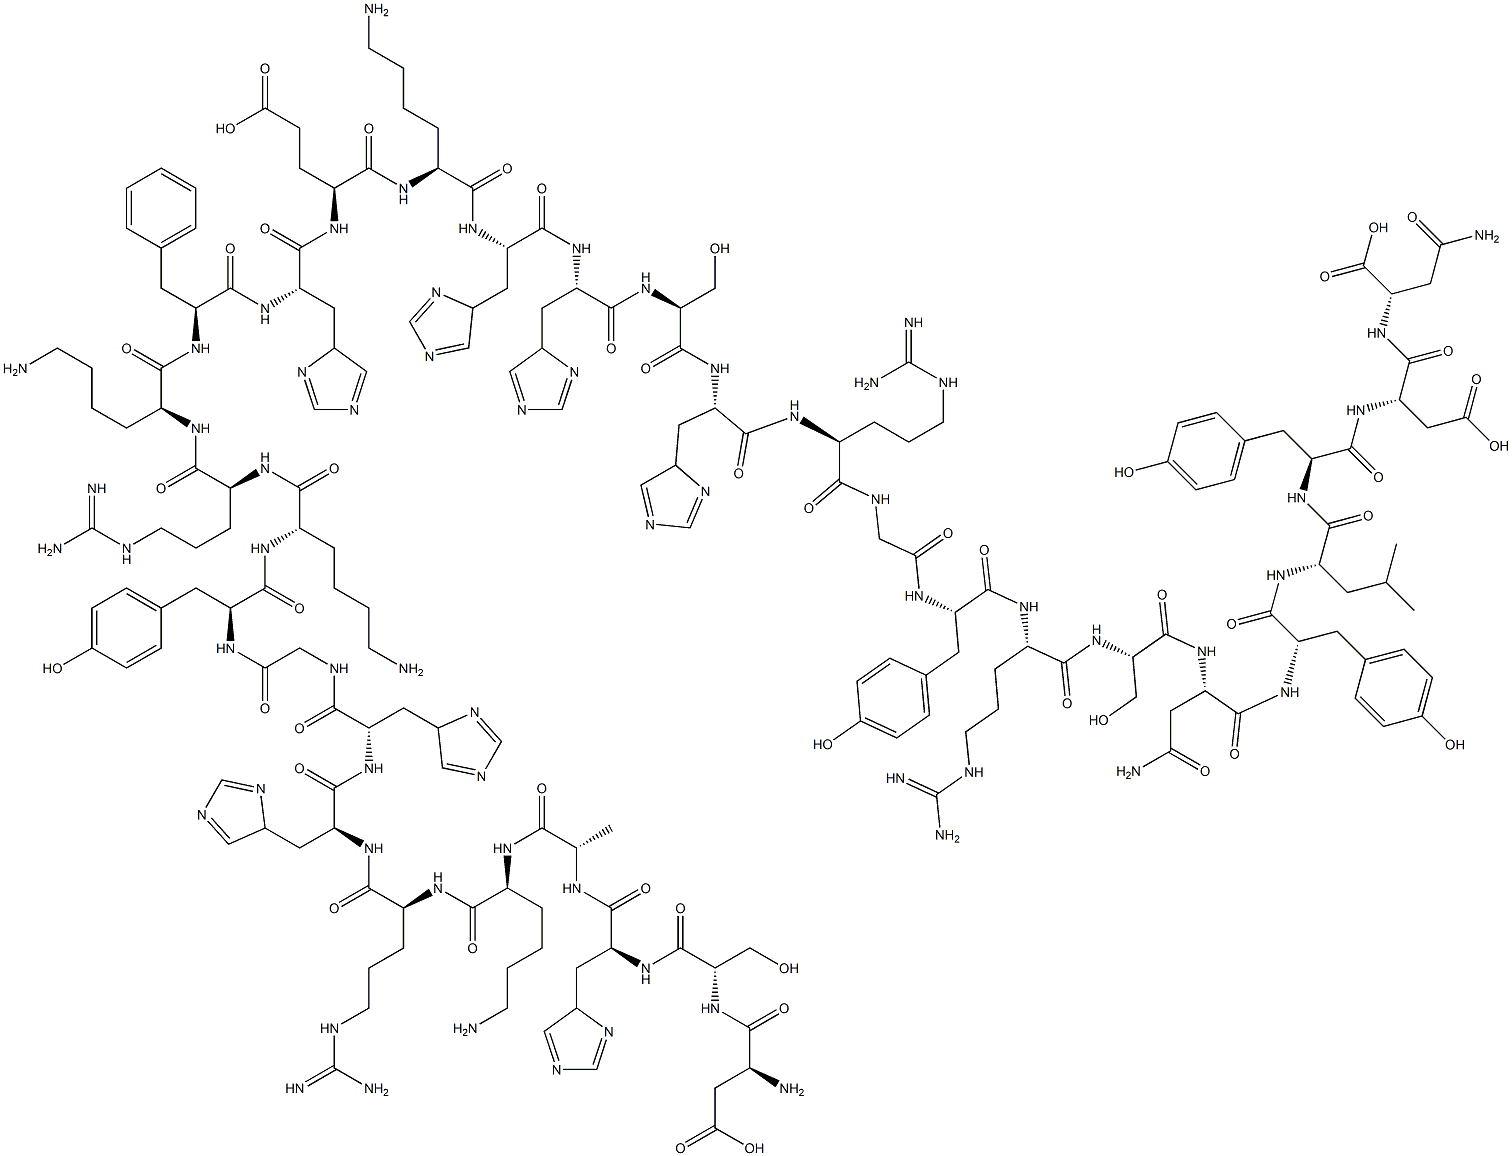 L-Asparagine, L-a-aspartyl-L-seryl-L-histidyl-L-alanyl-L-lysyl-L-arginyl-L-histidyl-L-histidylglycyl-L-tyrosyl-L-lysyl-L-arginyl-L-lysyl-L-phenylalanyl-L-histidyl-L-a-glutamyl-L-lysyl-L-histidyl-L-histidyl-L-seryl-L-histidyl-L-arginylglycyl-L-tyrosyl-L-arginyl-L-seryl-L-asparaginyl-L-tyrosyl-L-leucyl-L-tyrosyl-L-a-aspartyl- Structure